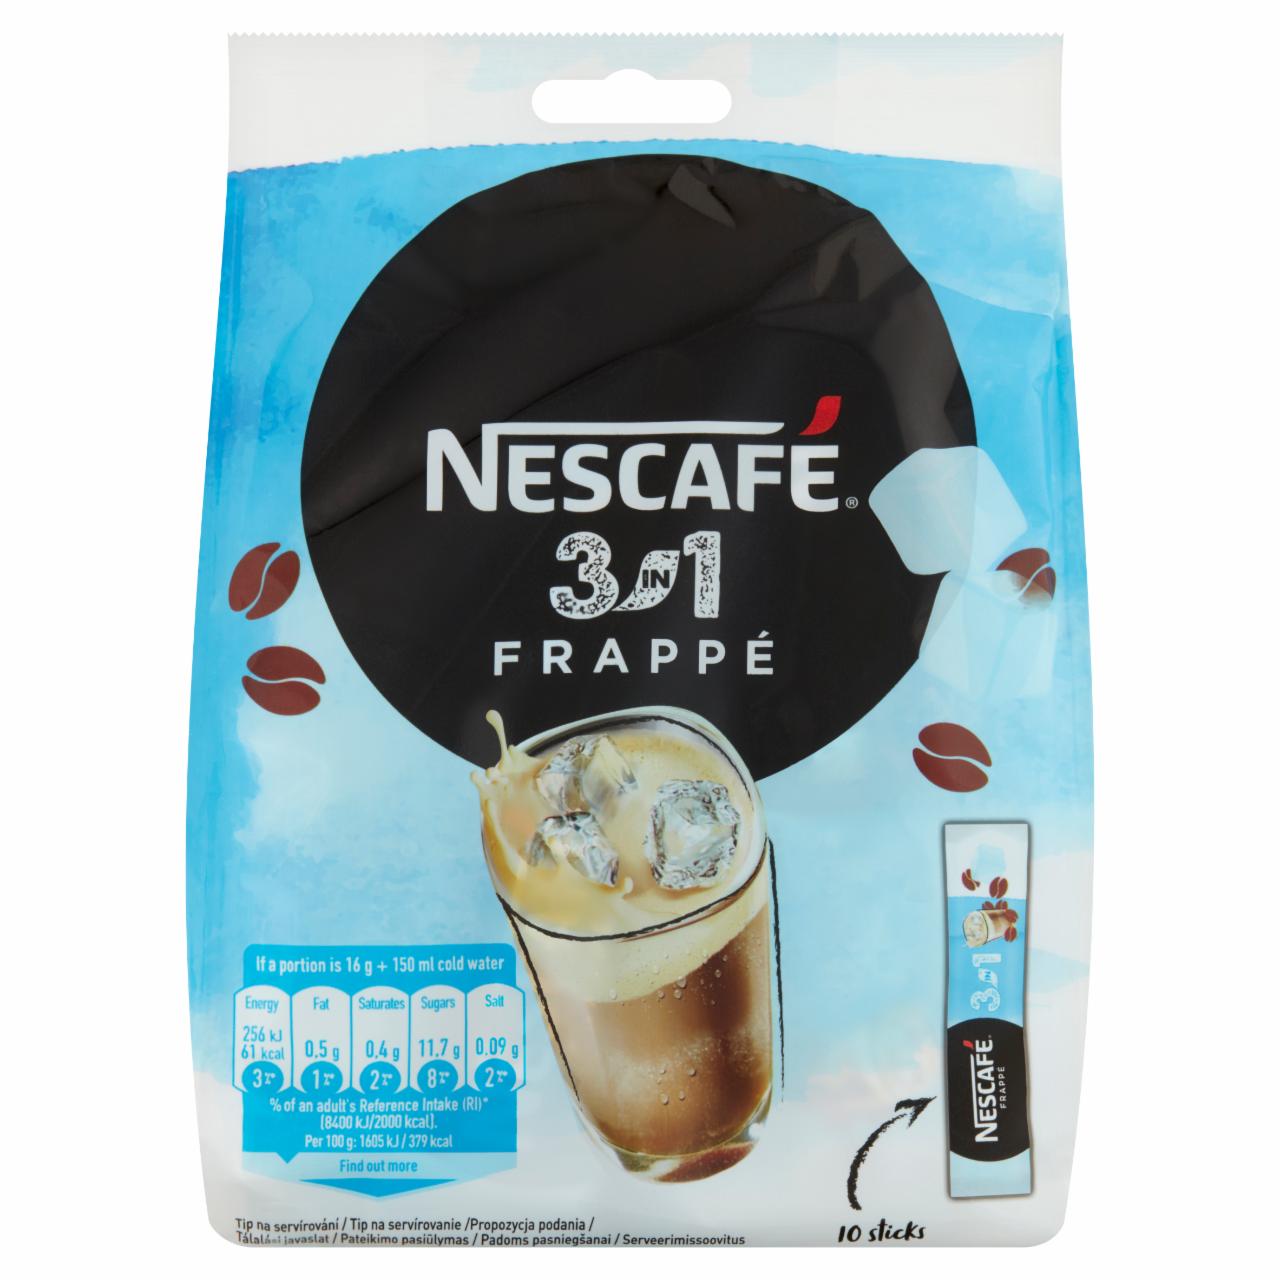 Képek - NESCAFÉ 3in1 Frappé azonnal oldódó kávéspecialitás 10 x 16 g (160 g)